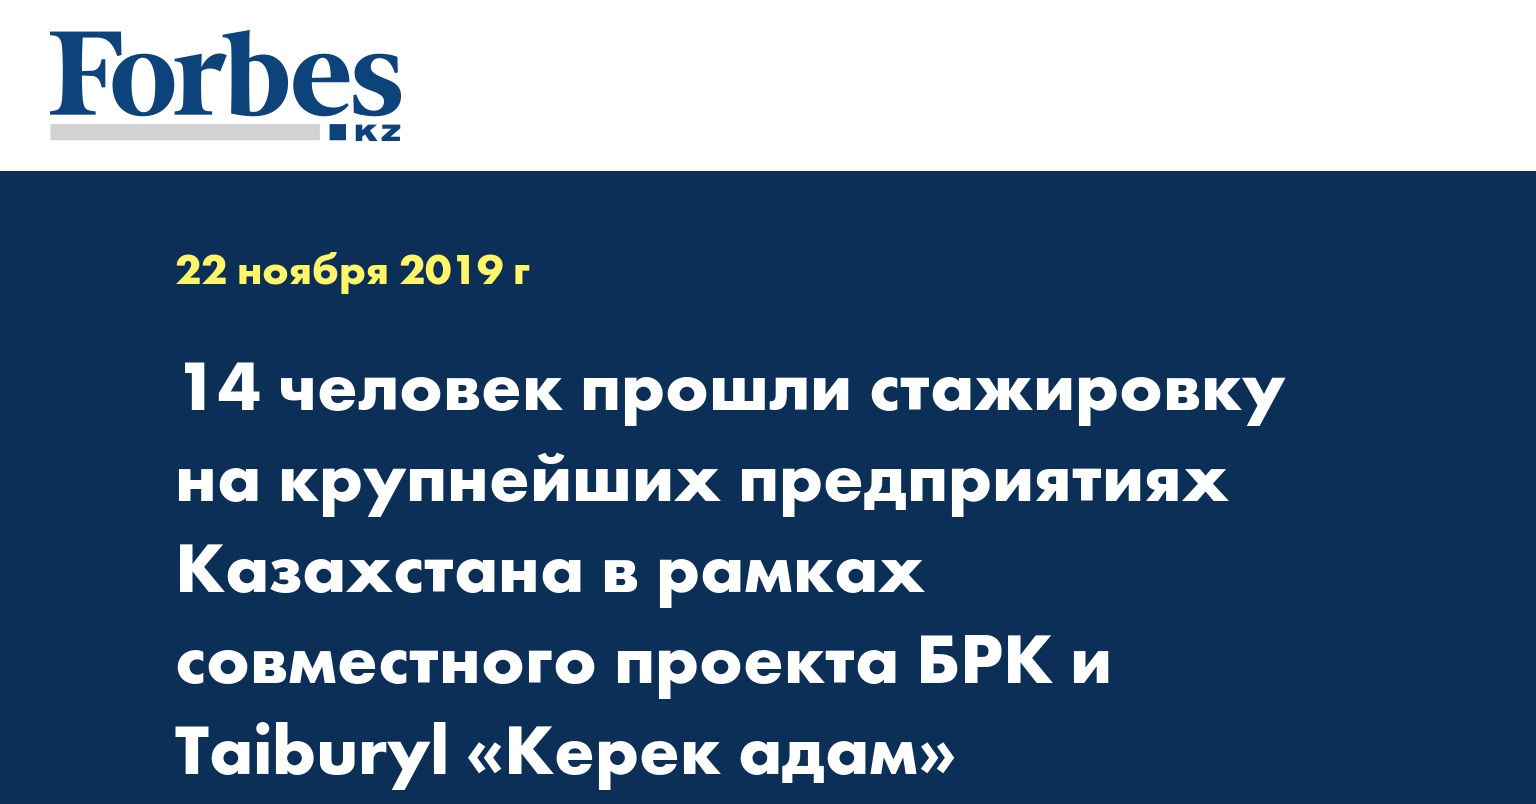 14 человек прошли стажировку на крупнейших предприятиях Казахстана в рамках совместного проекта БРК и Taiburyl «Керек адам»